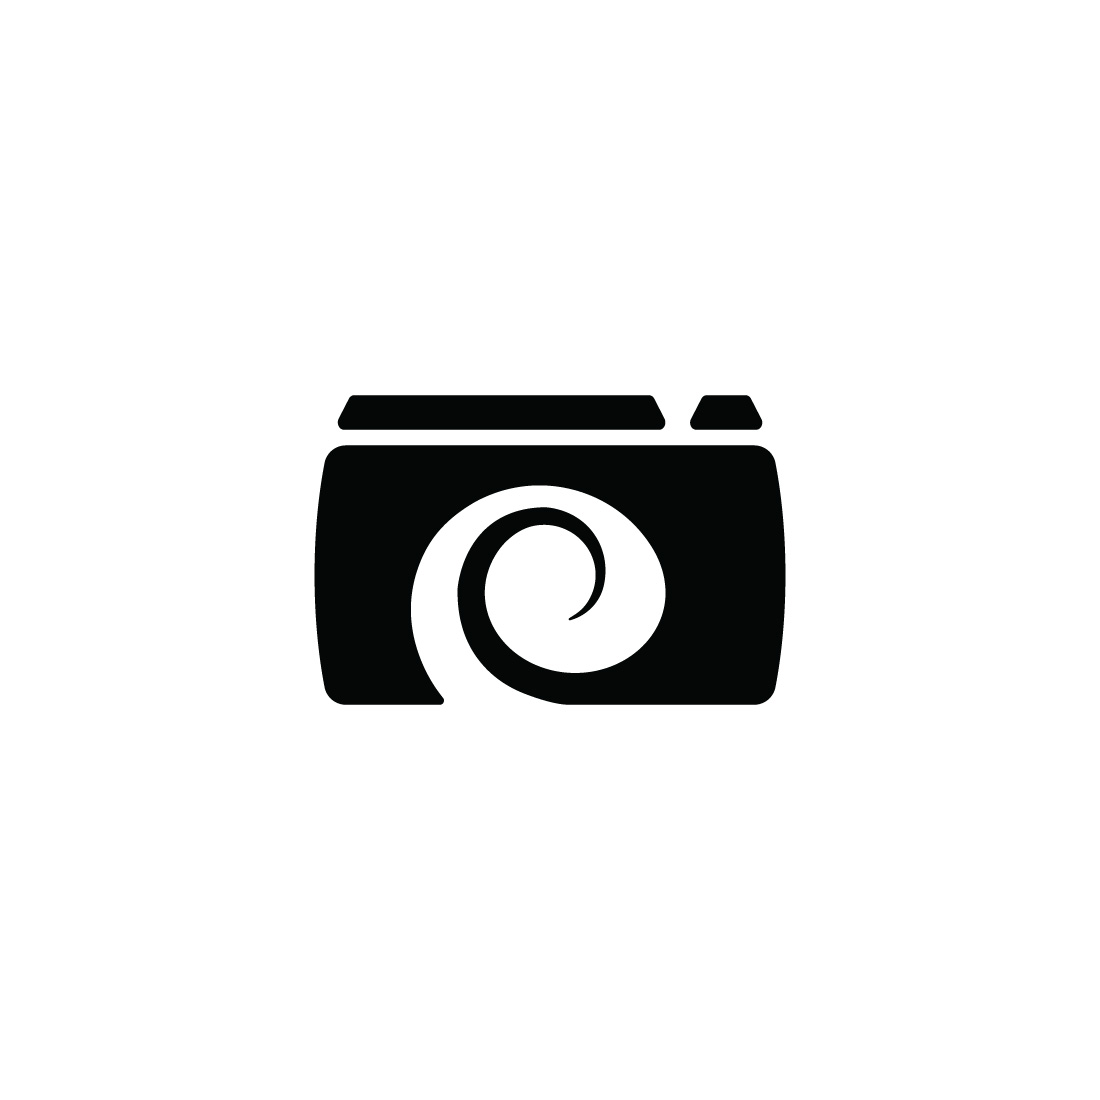 Brand New Camera Logo preview image.